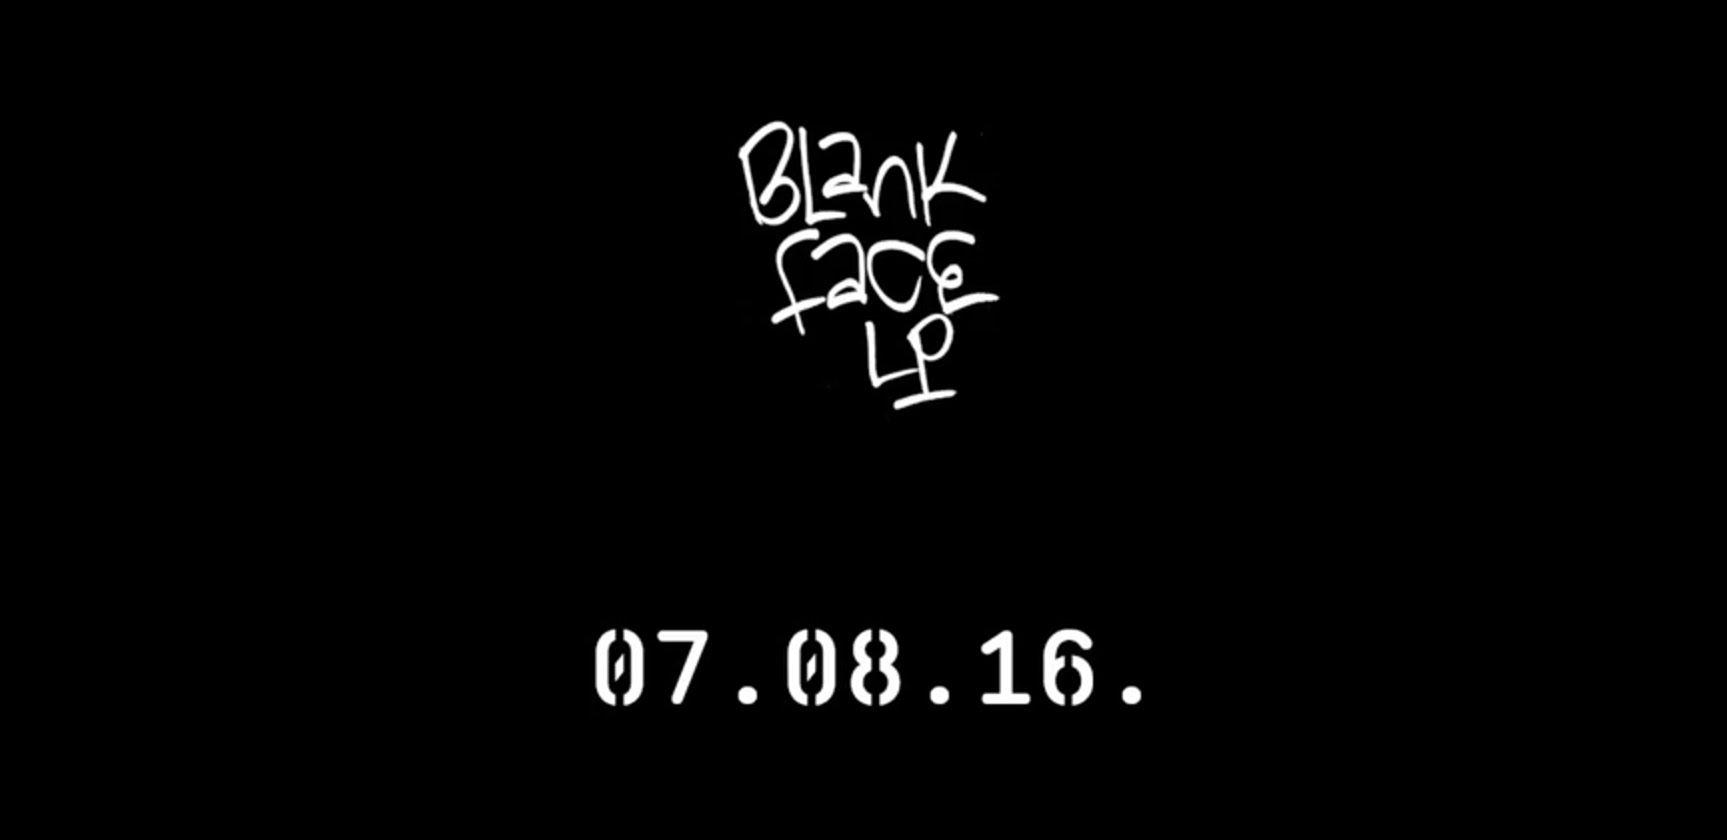 Blank Face Logo - Schoolboy Q 'Blank Face LP' (Teaser)